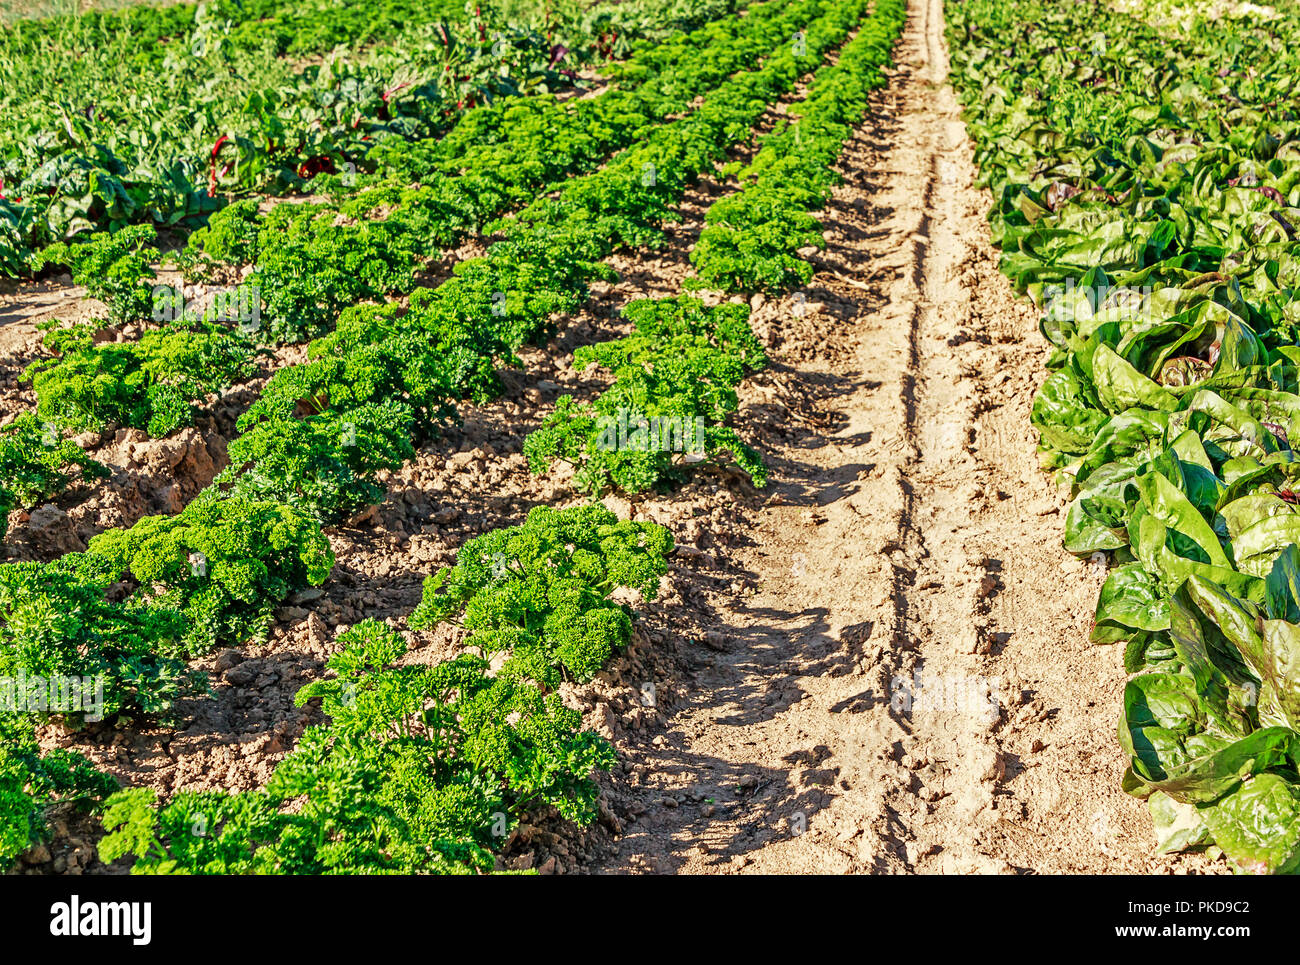 Agricoltura biologica in Germania - campo con lunghi filari di prezzemolo e piante di lattuga. Foto Stock